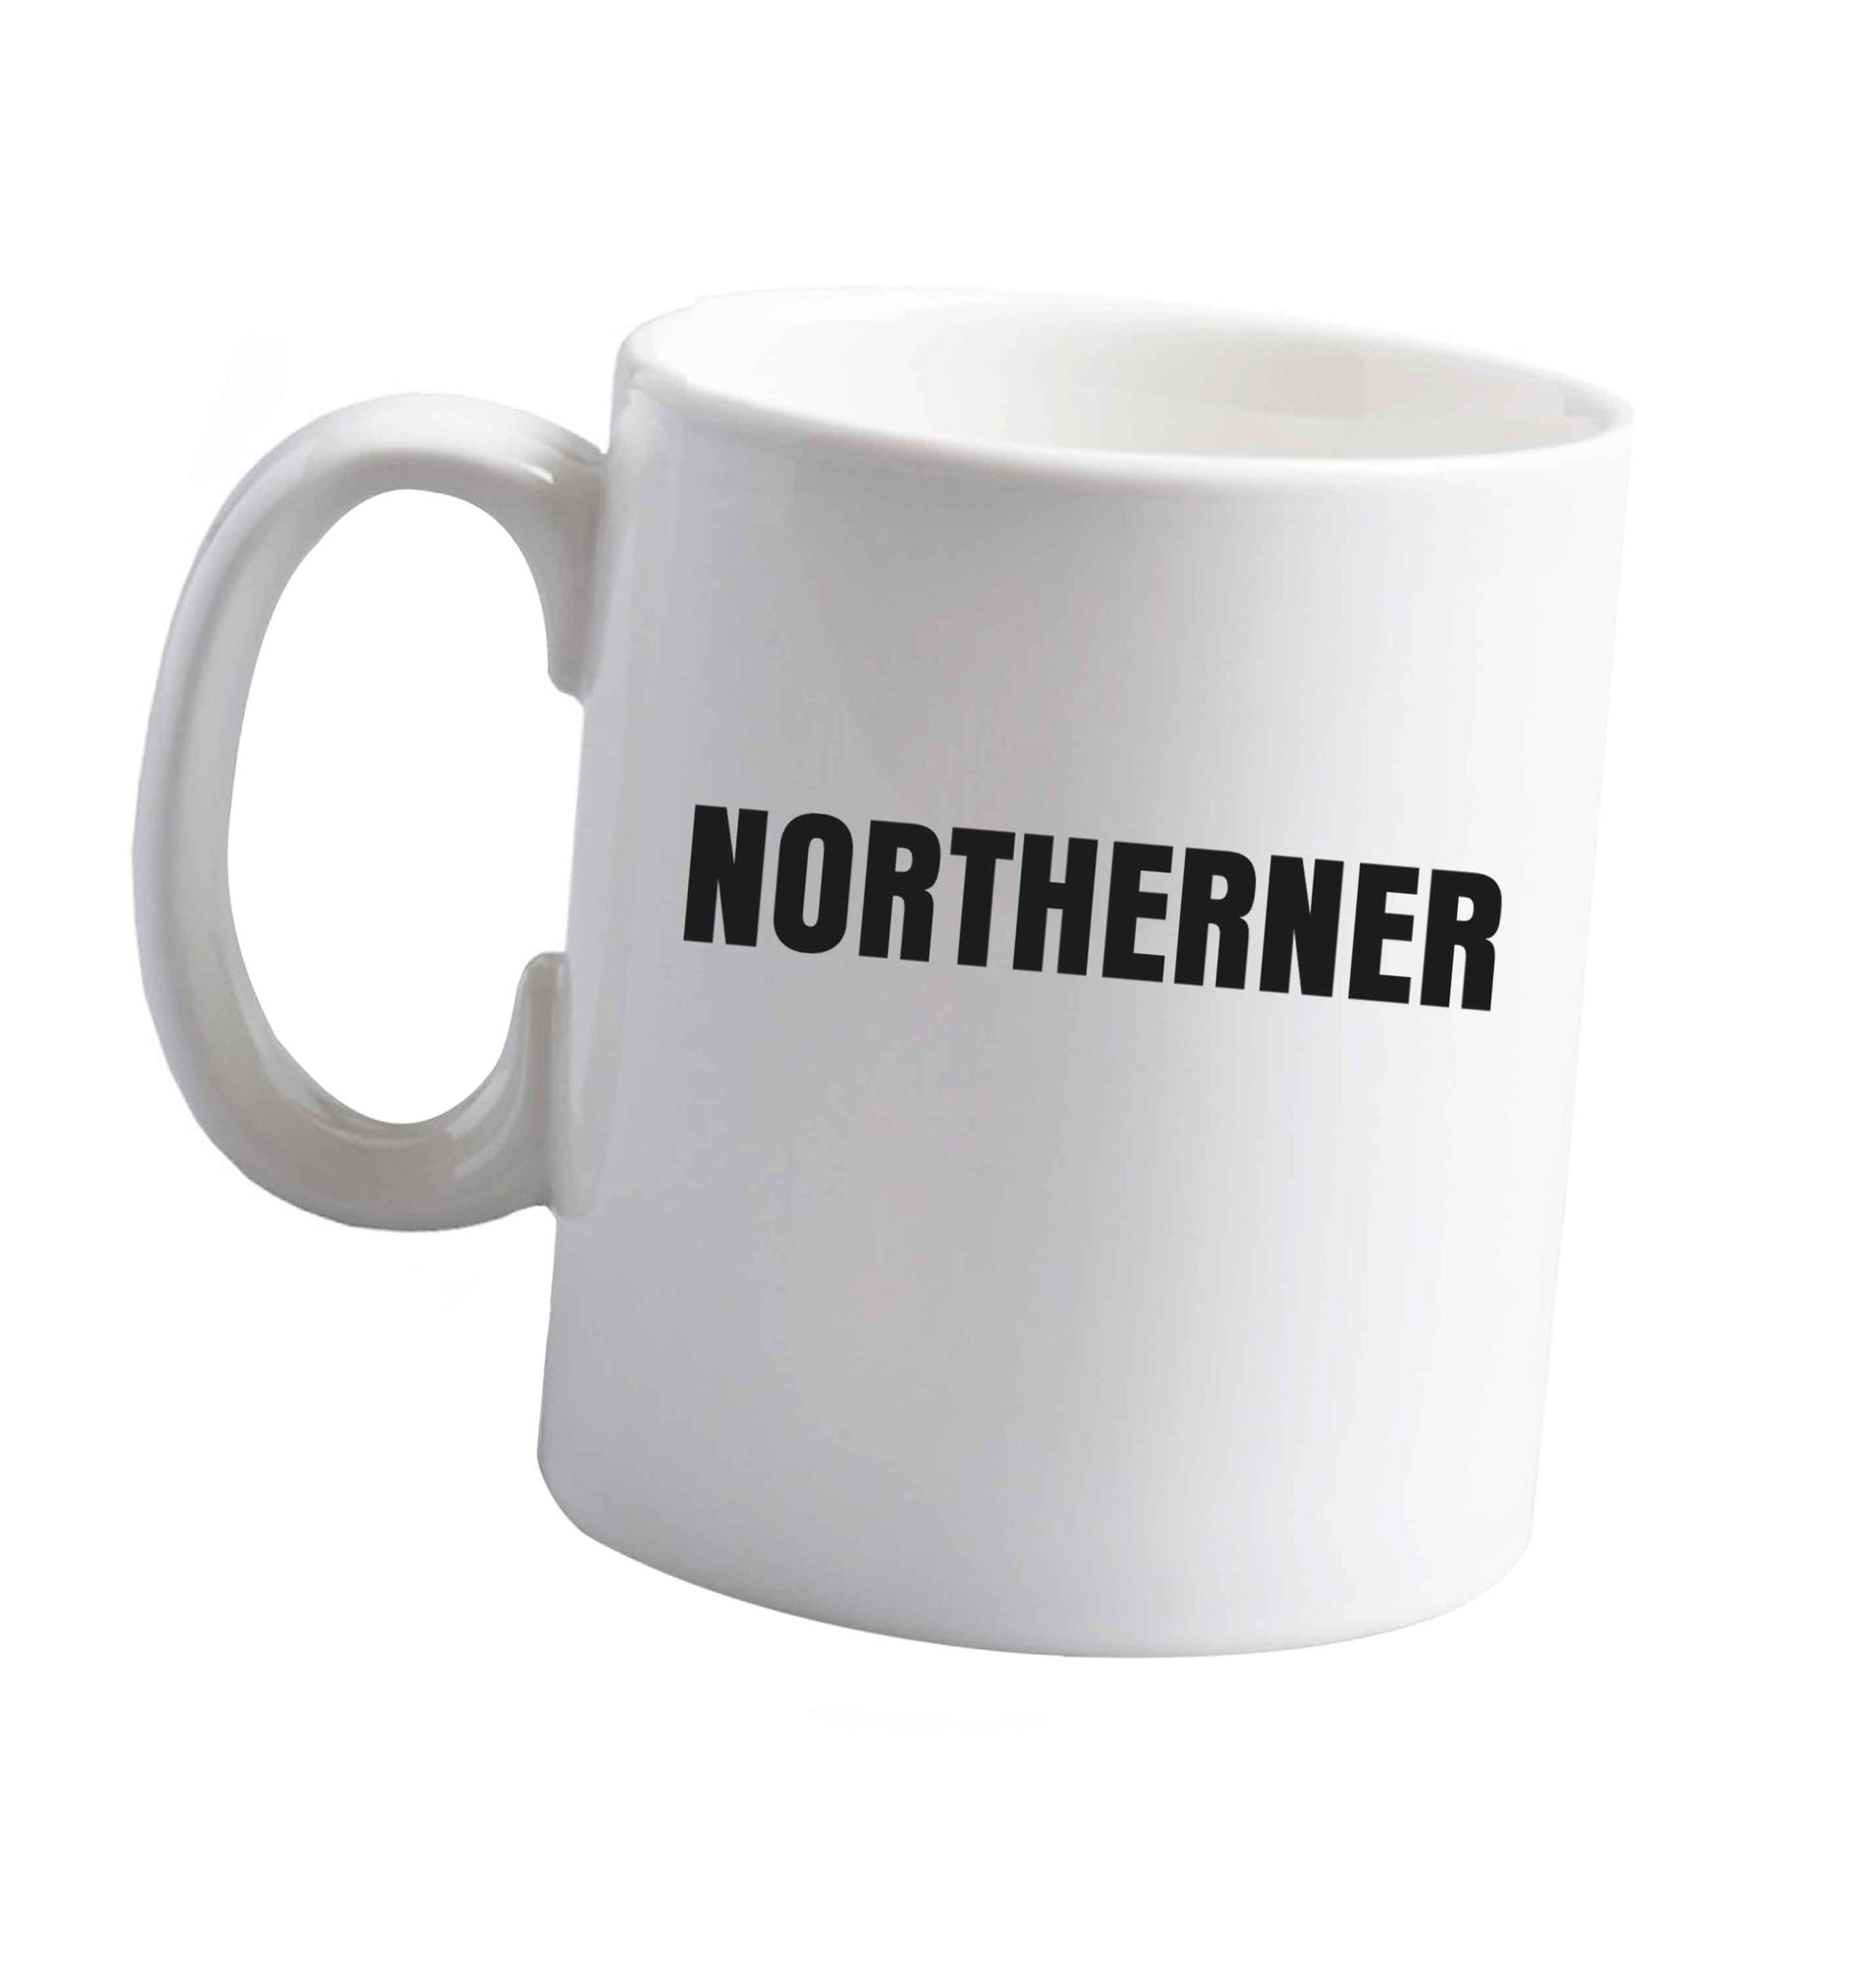 10 oz Northerner ceramic mug right handed